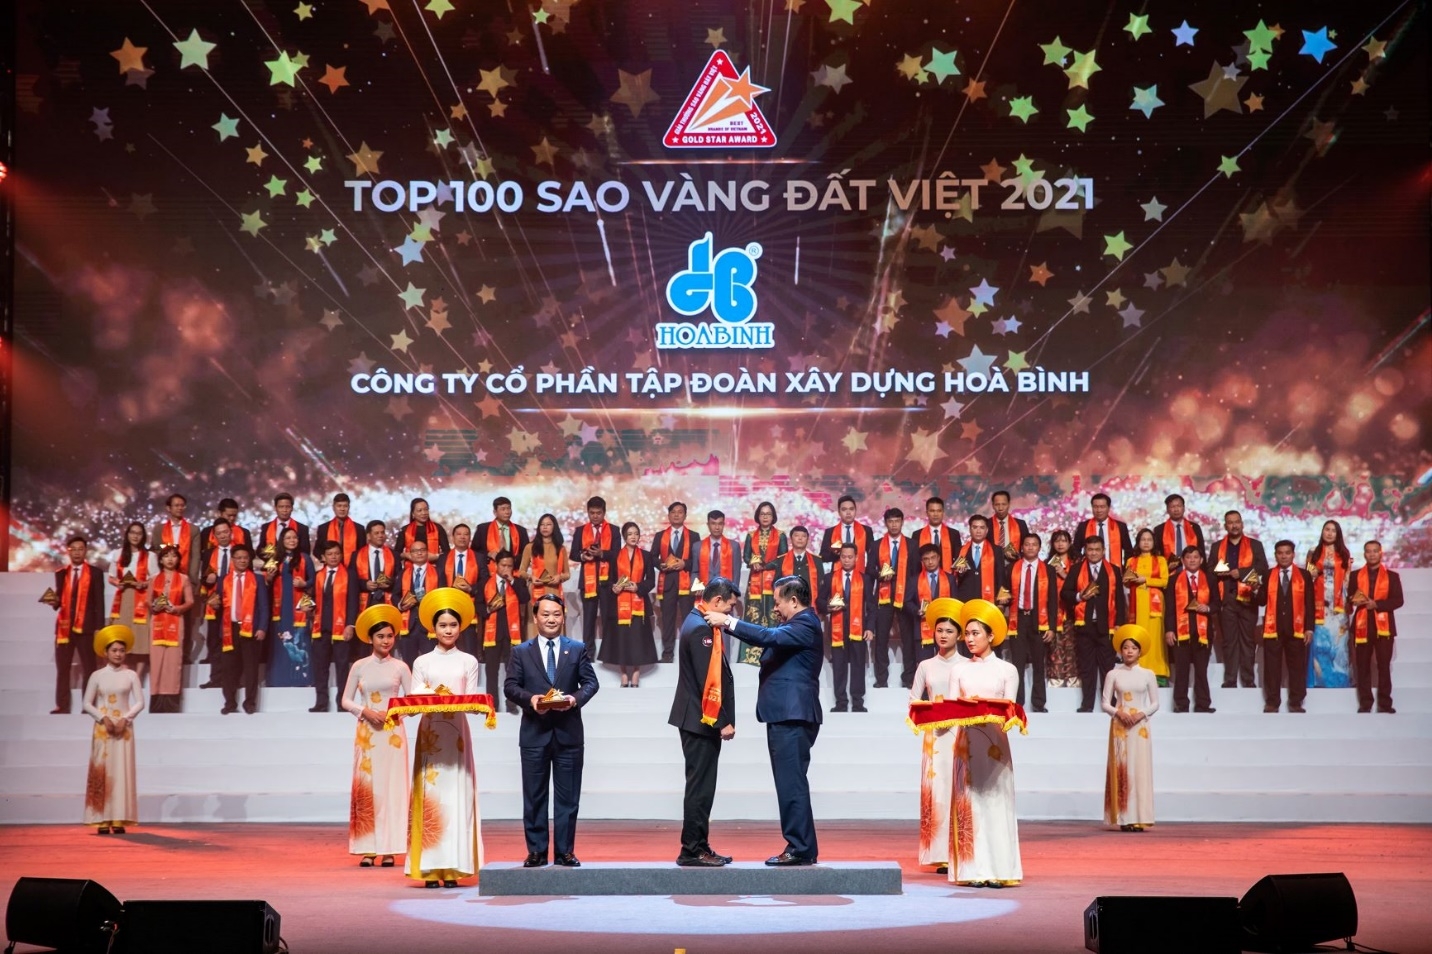 Tập đoàn Xây dựng Hòa Bình tiếp tục được vinh danh Top 100 Sao Vàng đất Việt 2021